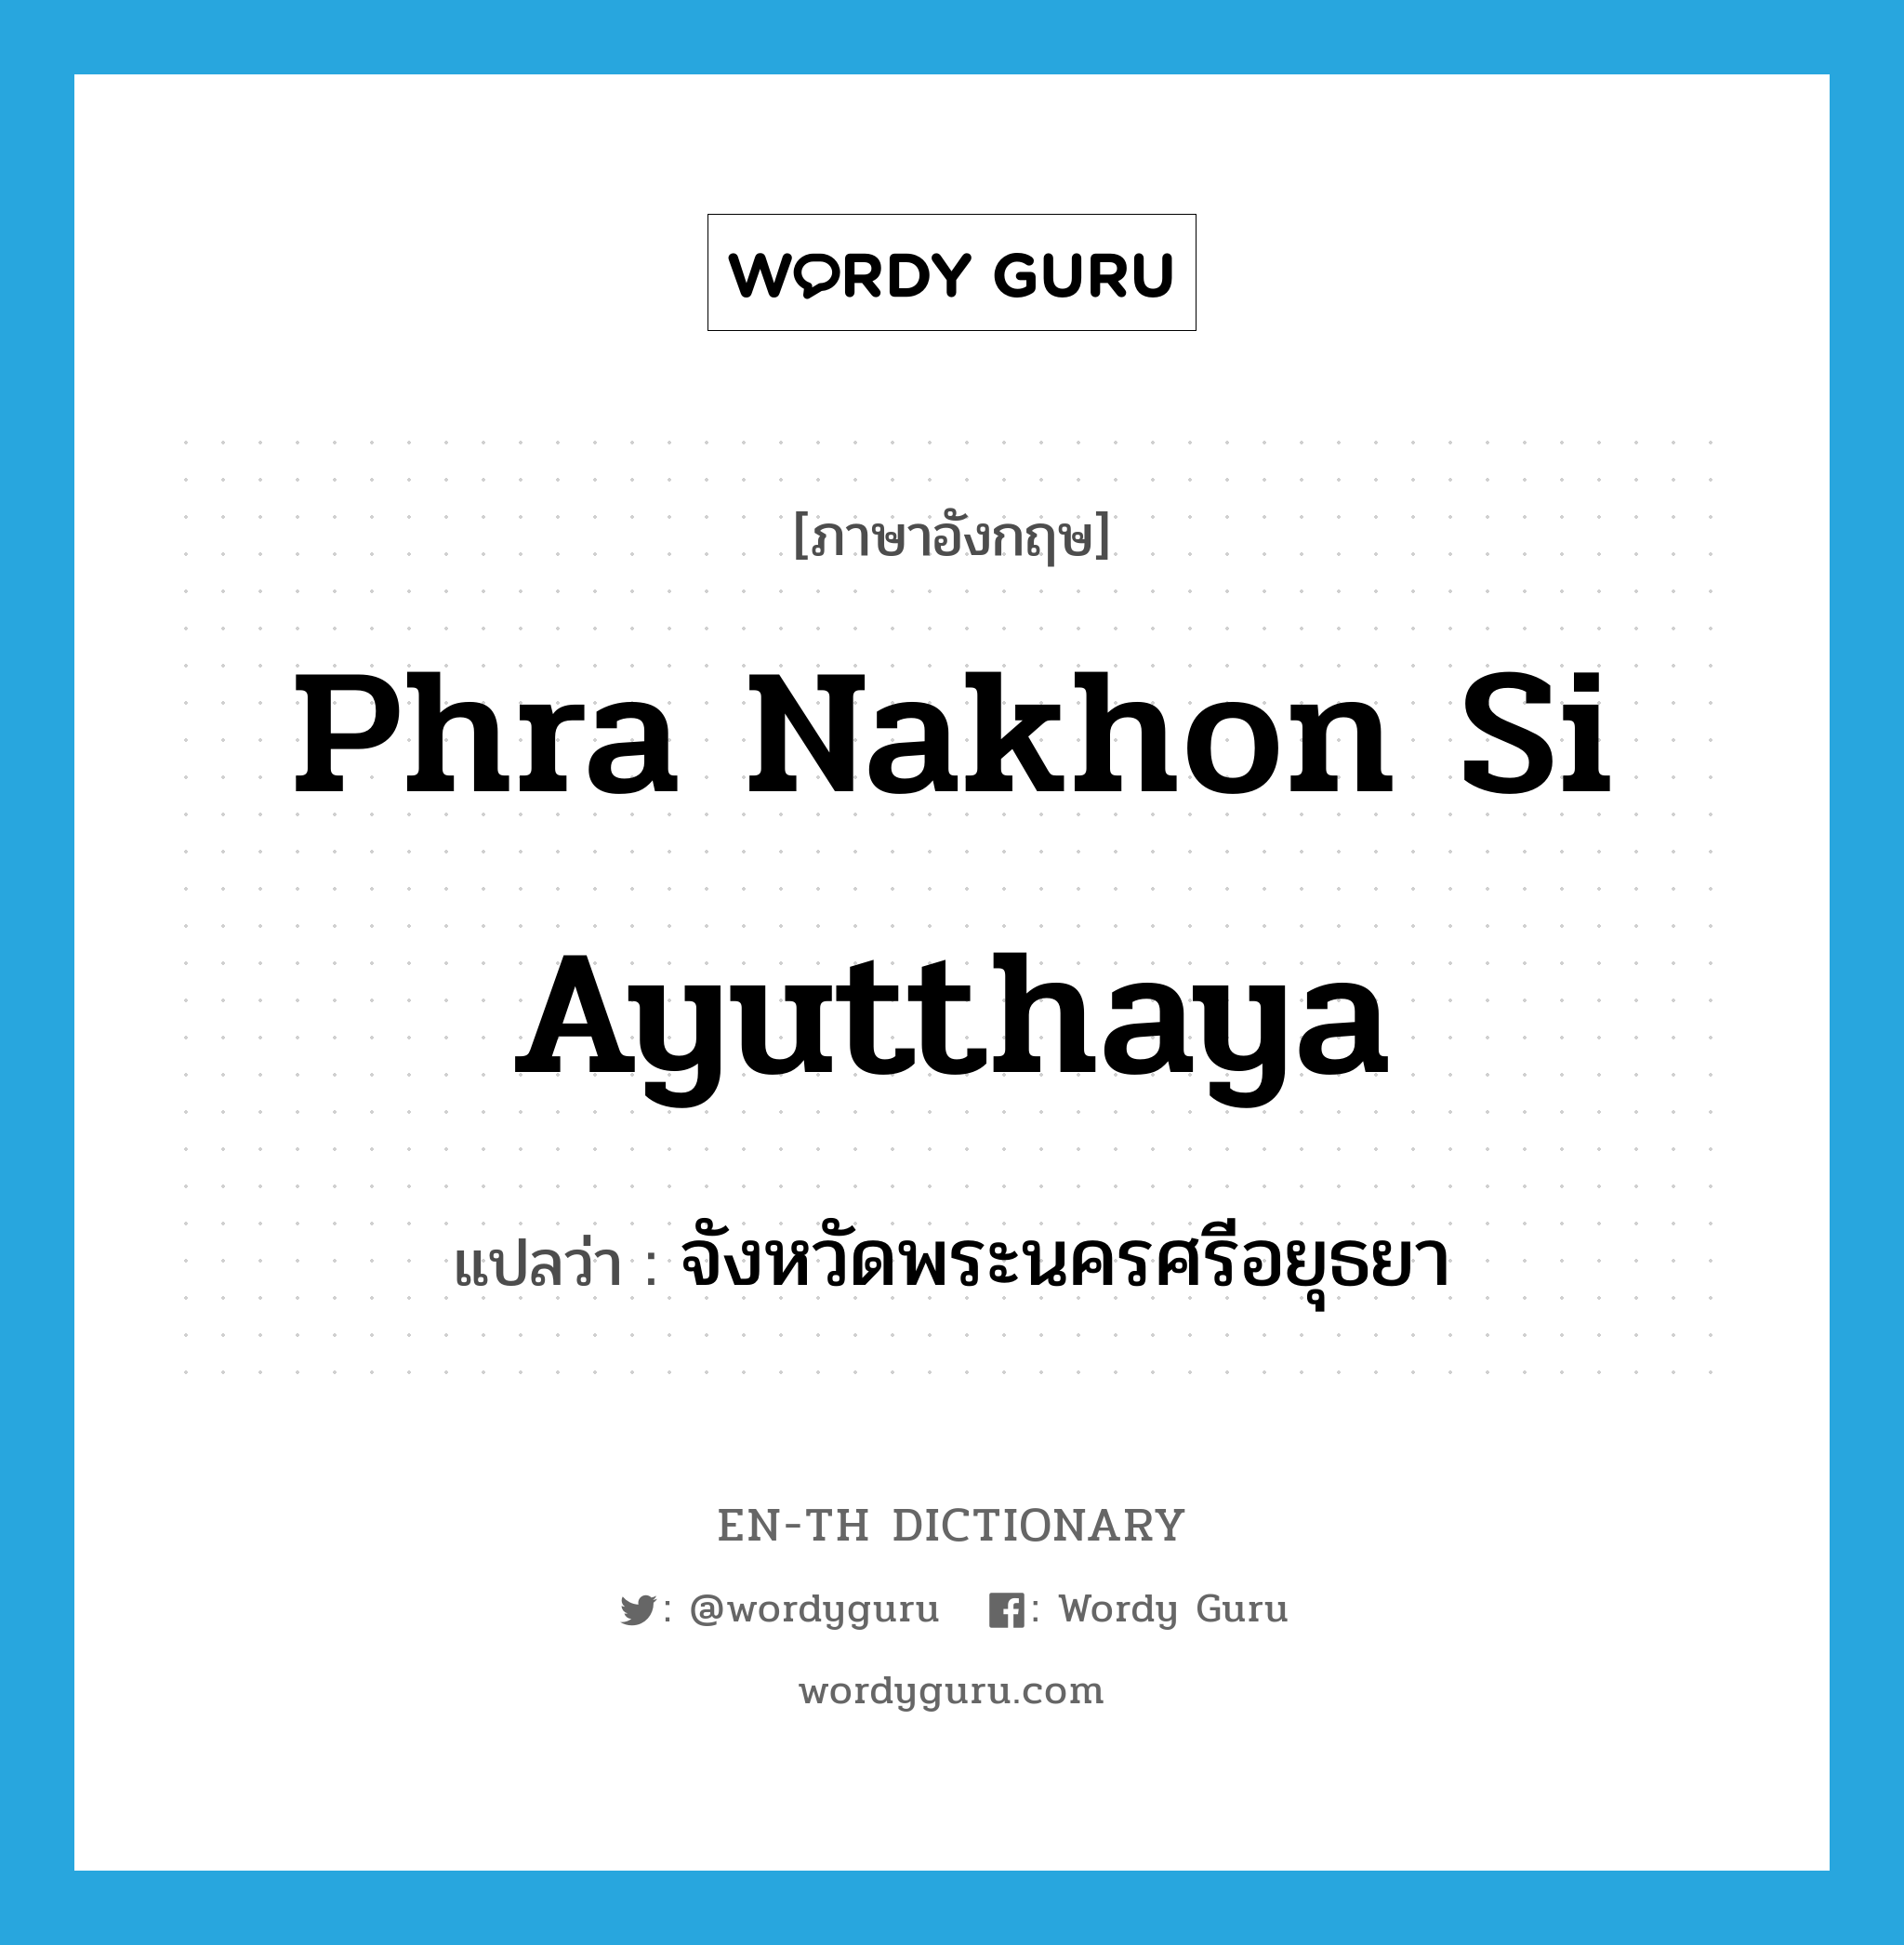 จังหวัดพระนครศรีอยุธยา ภาษาอังกฤษ?, คำศัพท์ภาษาอังกฤษ จังหวัดพระนครศรีอยุธยา แปลว่า Phra Nakhon Si Ayutthaya ประเภท N หมวด N